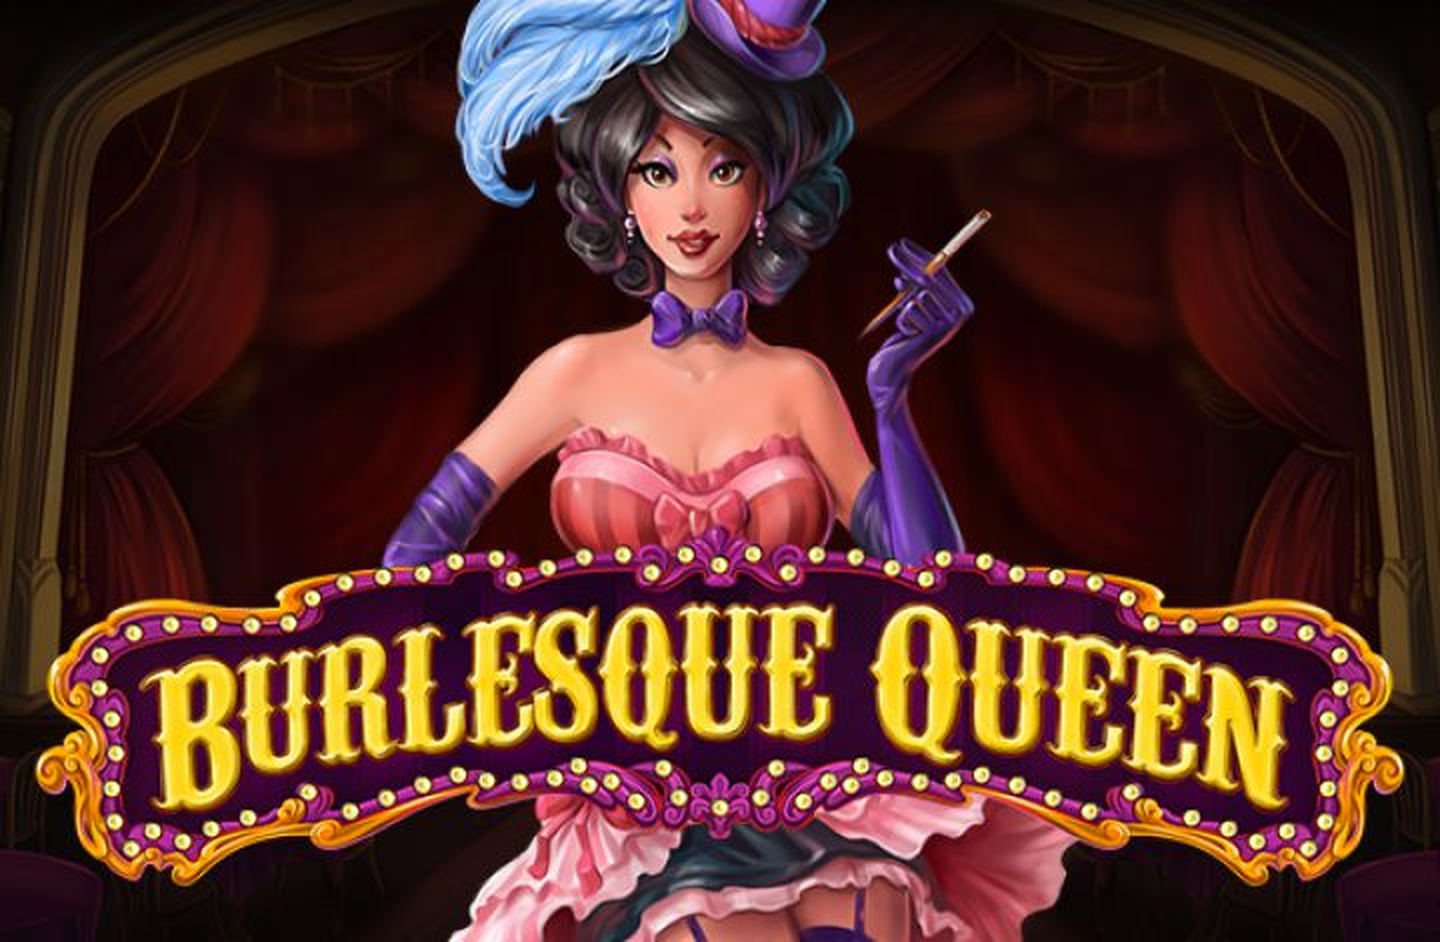 Burlesque Queen demo